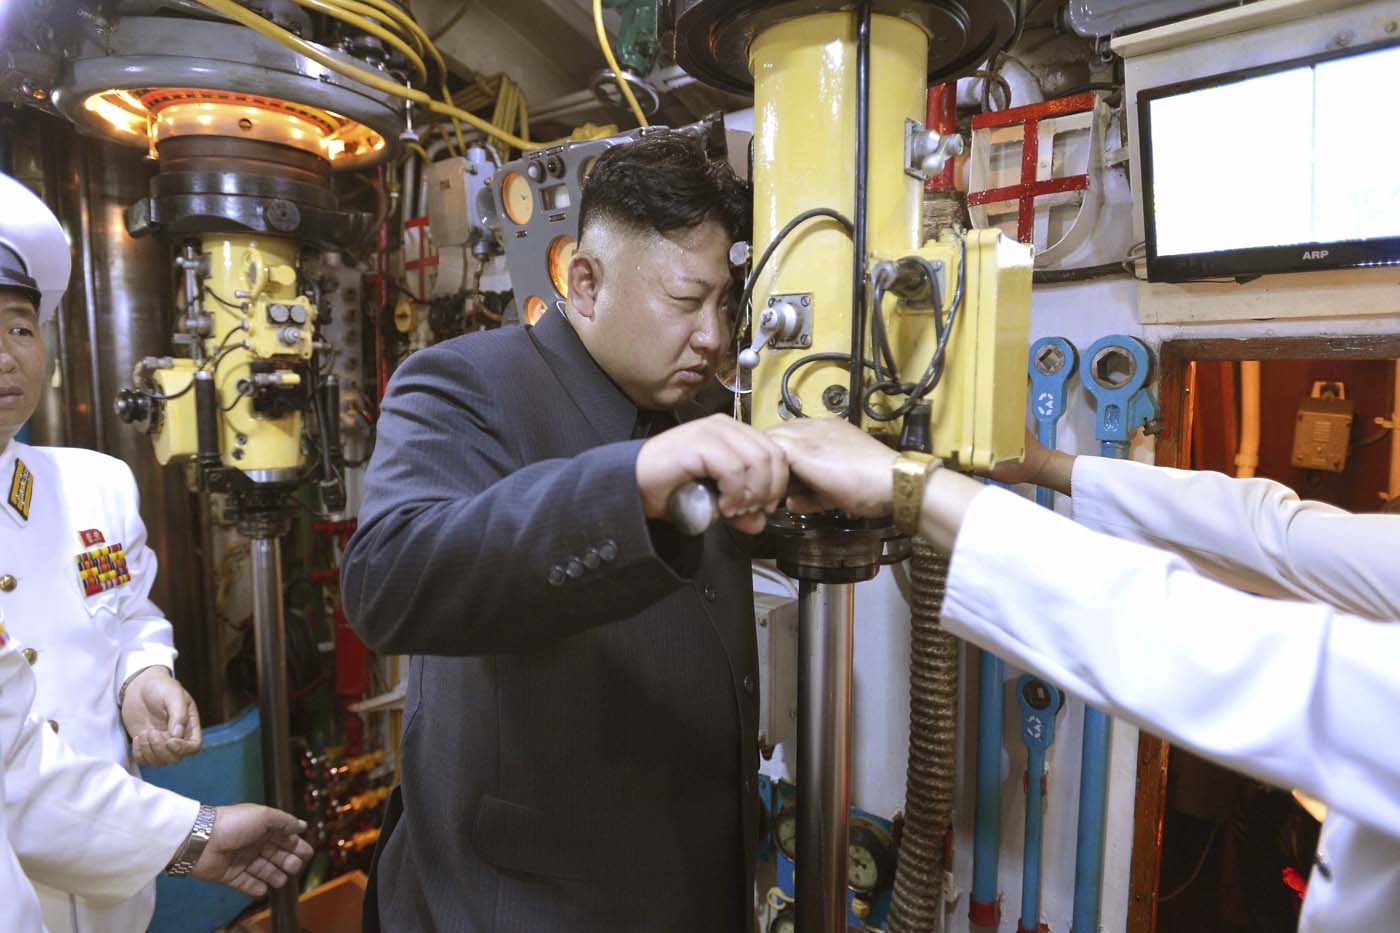 Washington y sus aliados prometen duras sanciones a Norcorea por ensayo nuclear